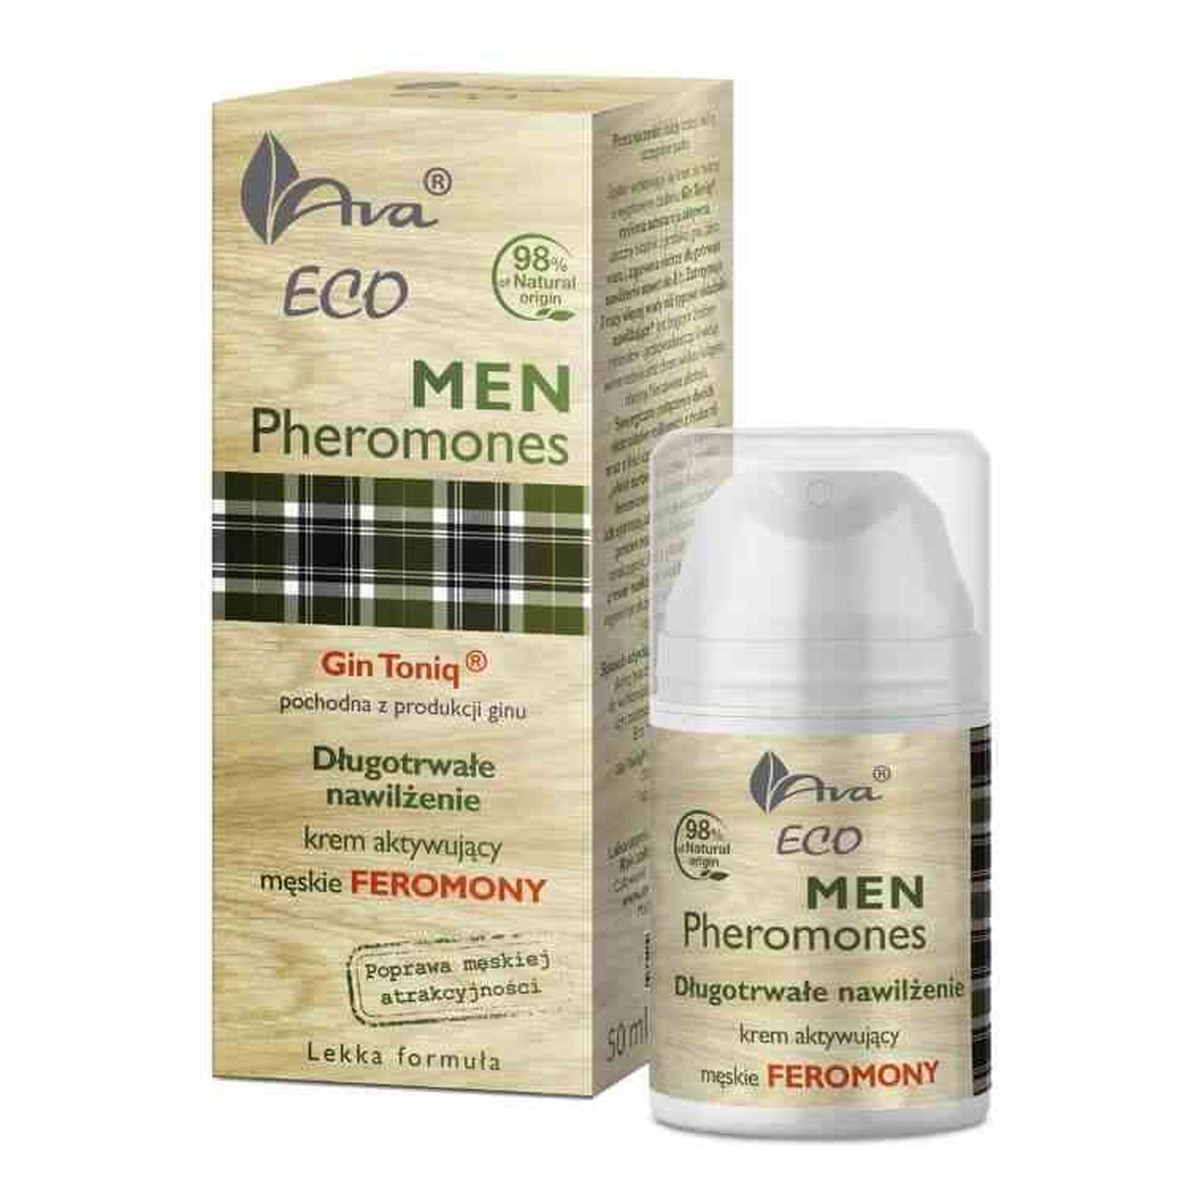 Ava Laboratorium Eco Men Pheromones długotrwałe nawilżenie krem do twarzy aktywujący męskie feromony 50ml